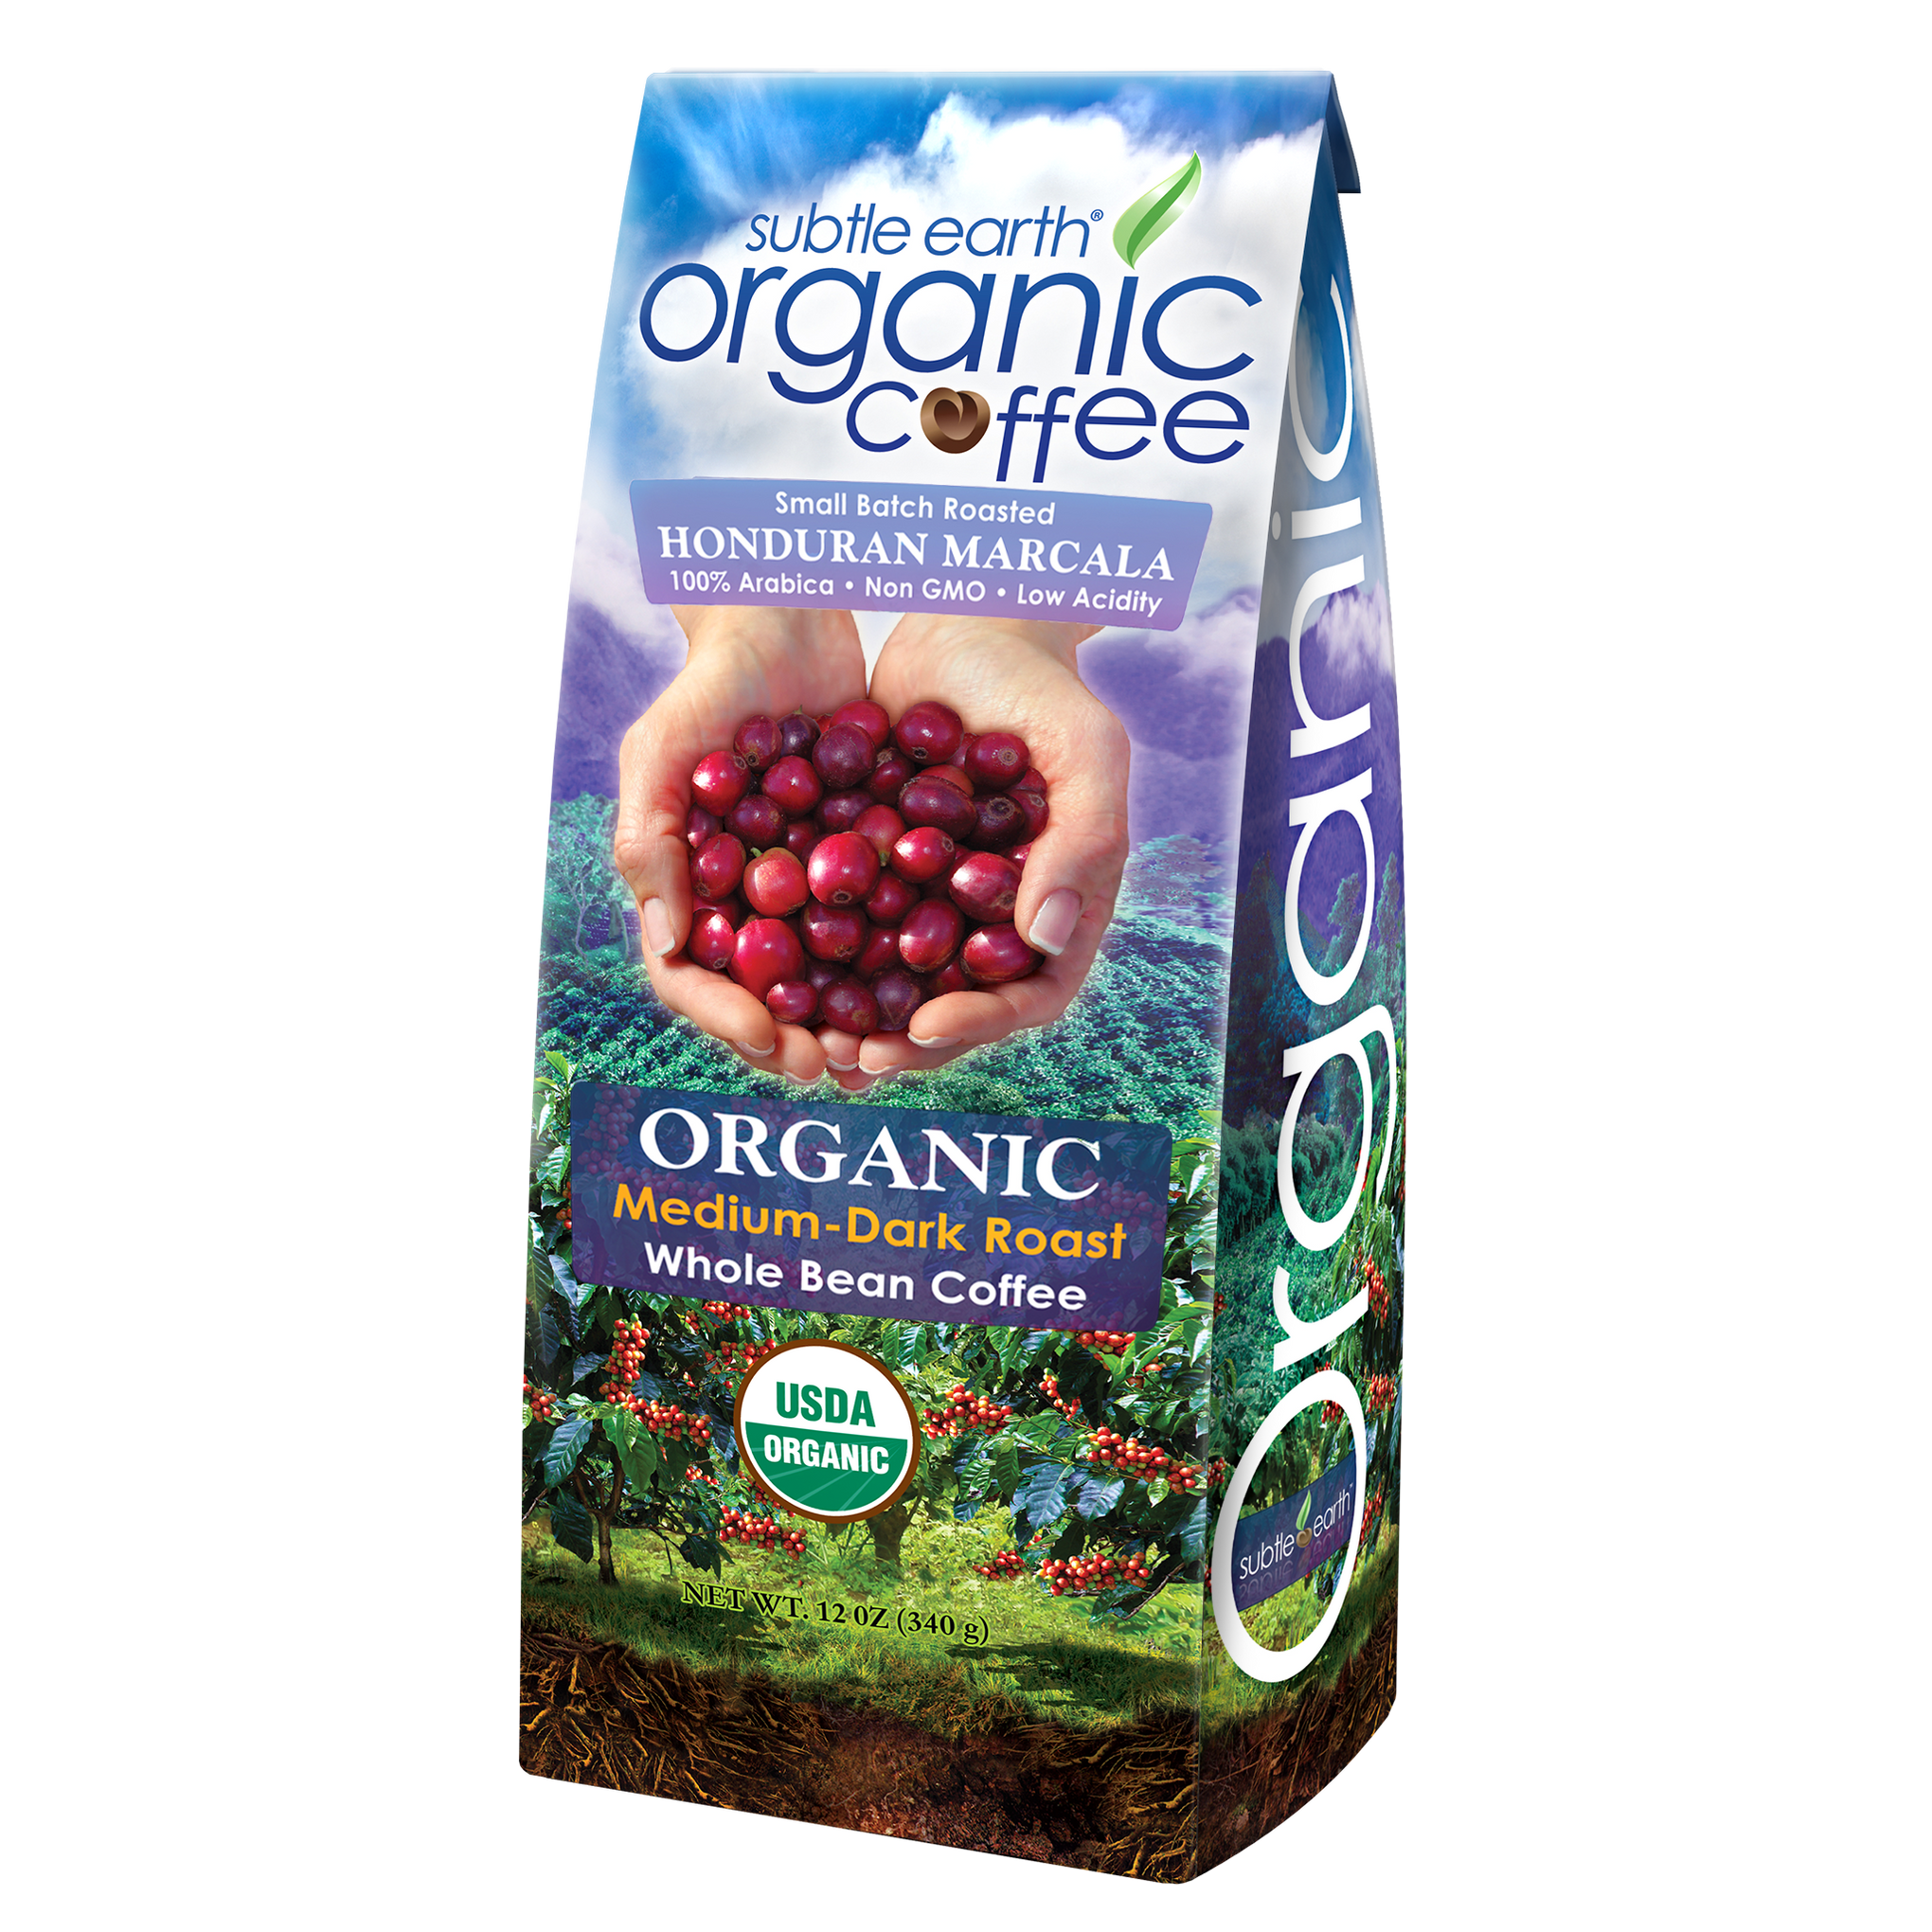 Subtle Earth Organic Medium-dark Roast Coffee 12 oz Bag hide